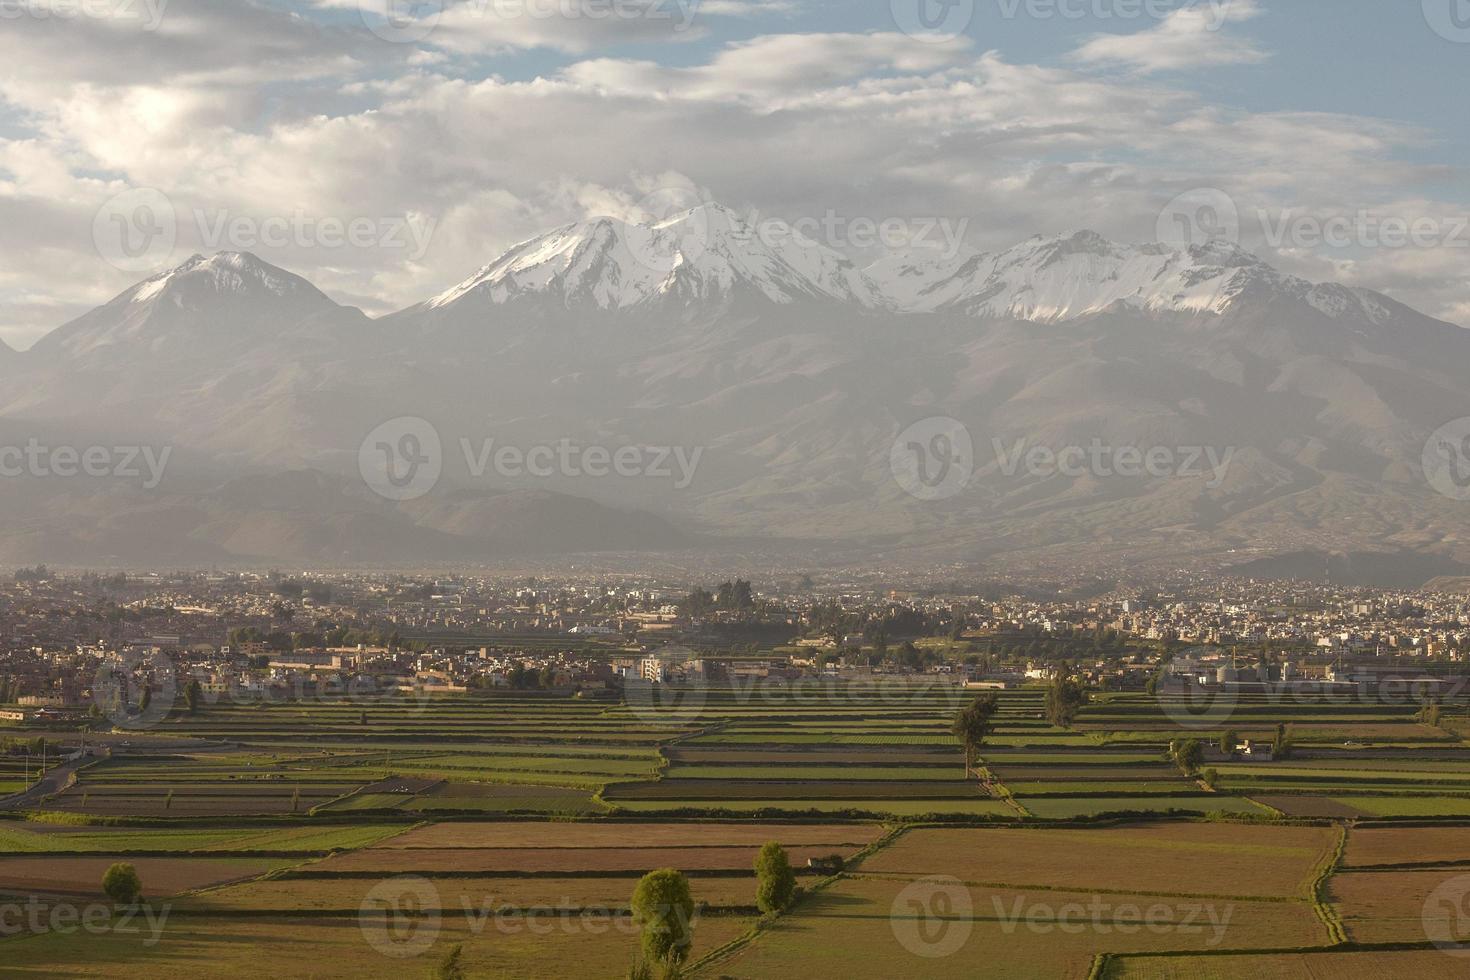 stad arequipa peru met zijn iconische velden en vulkaan chachani op de achtergrond foto